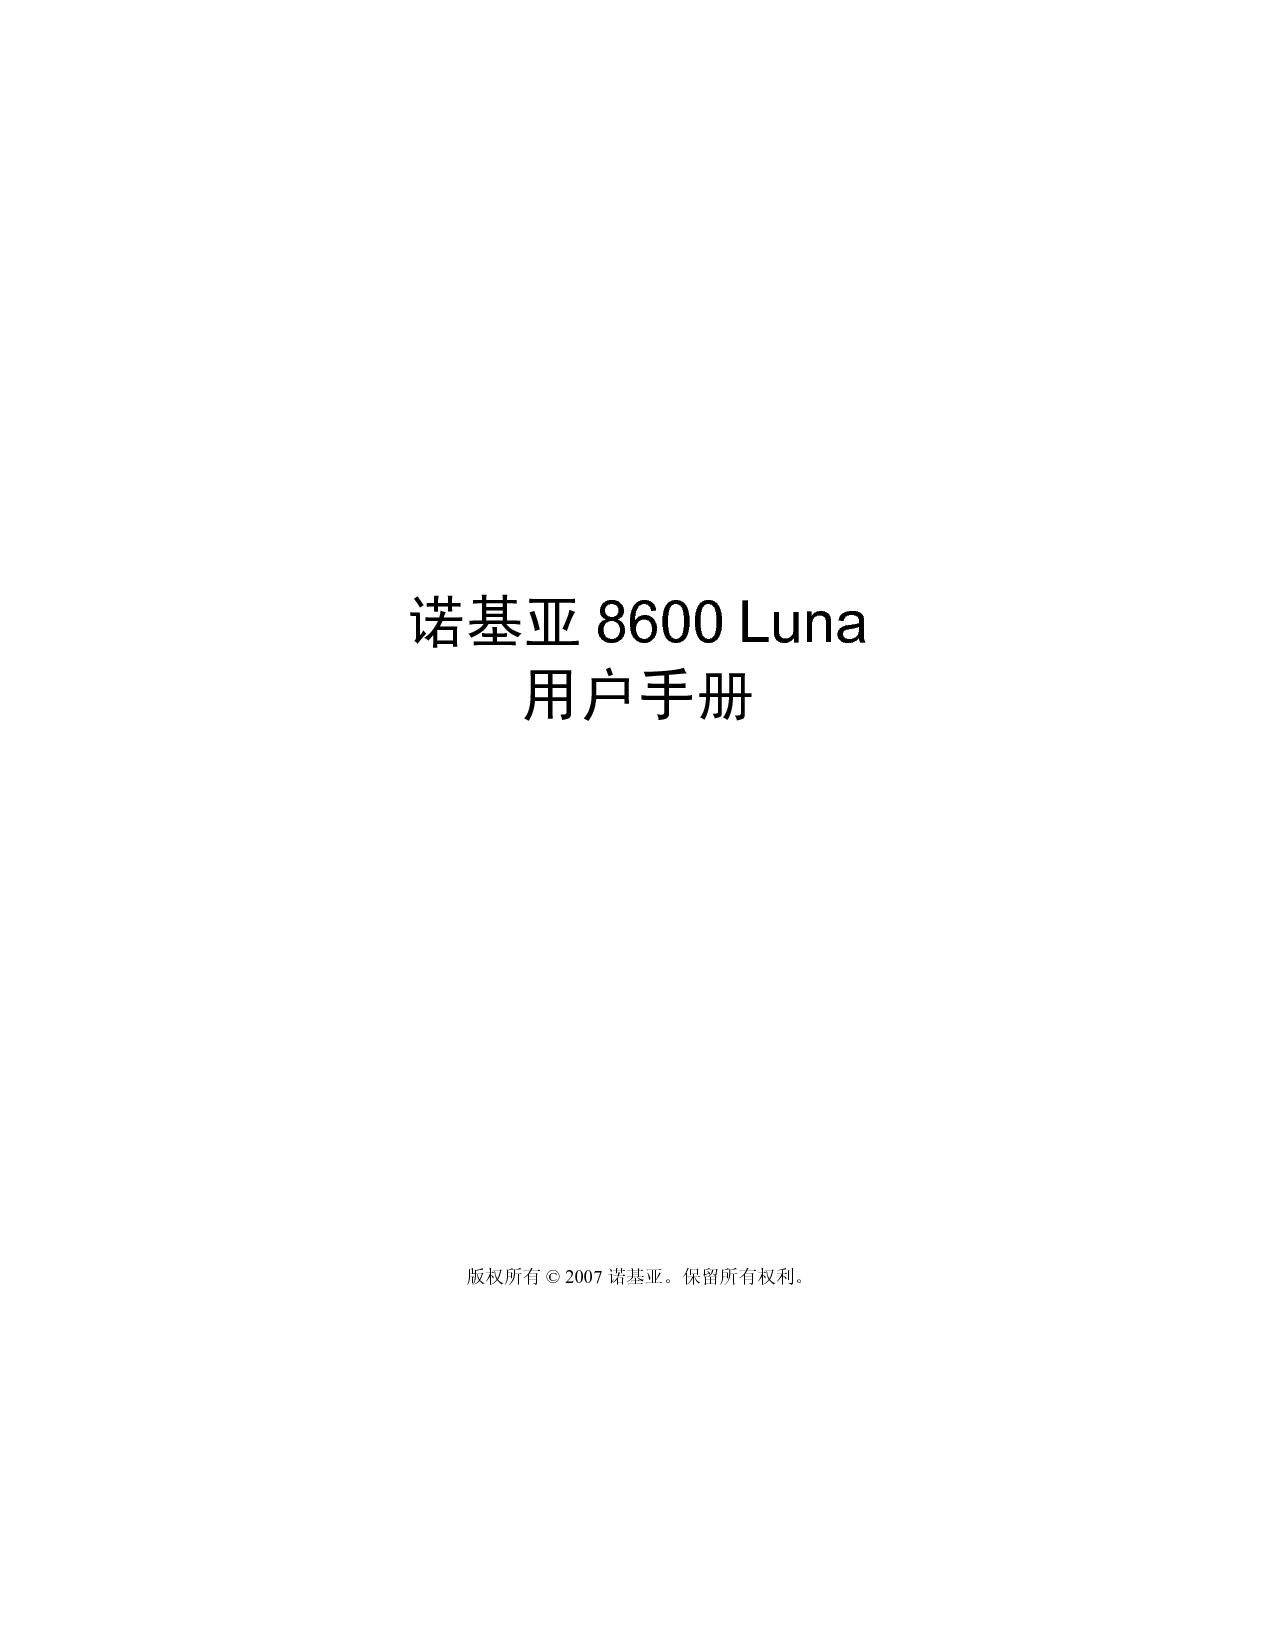 诺基亚 Nokia 8600 LUNA 用户手册 封面